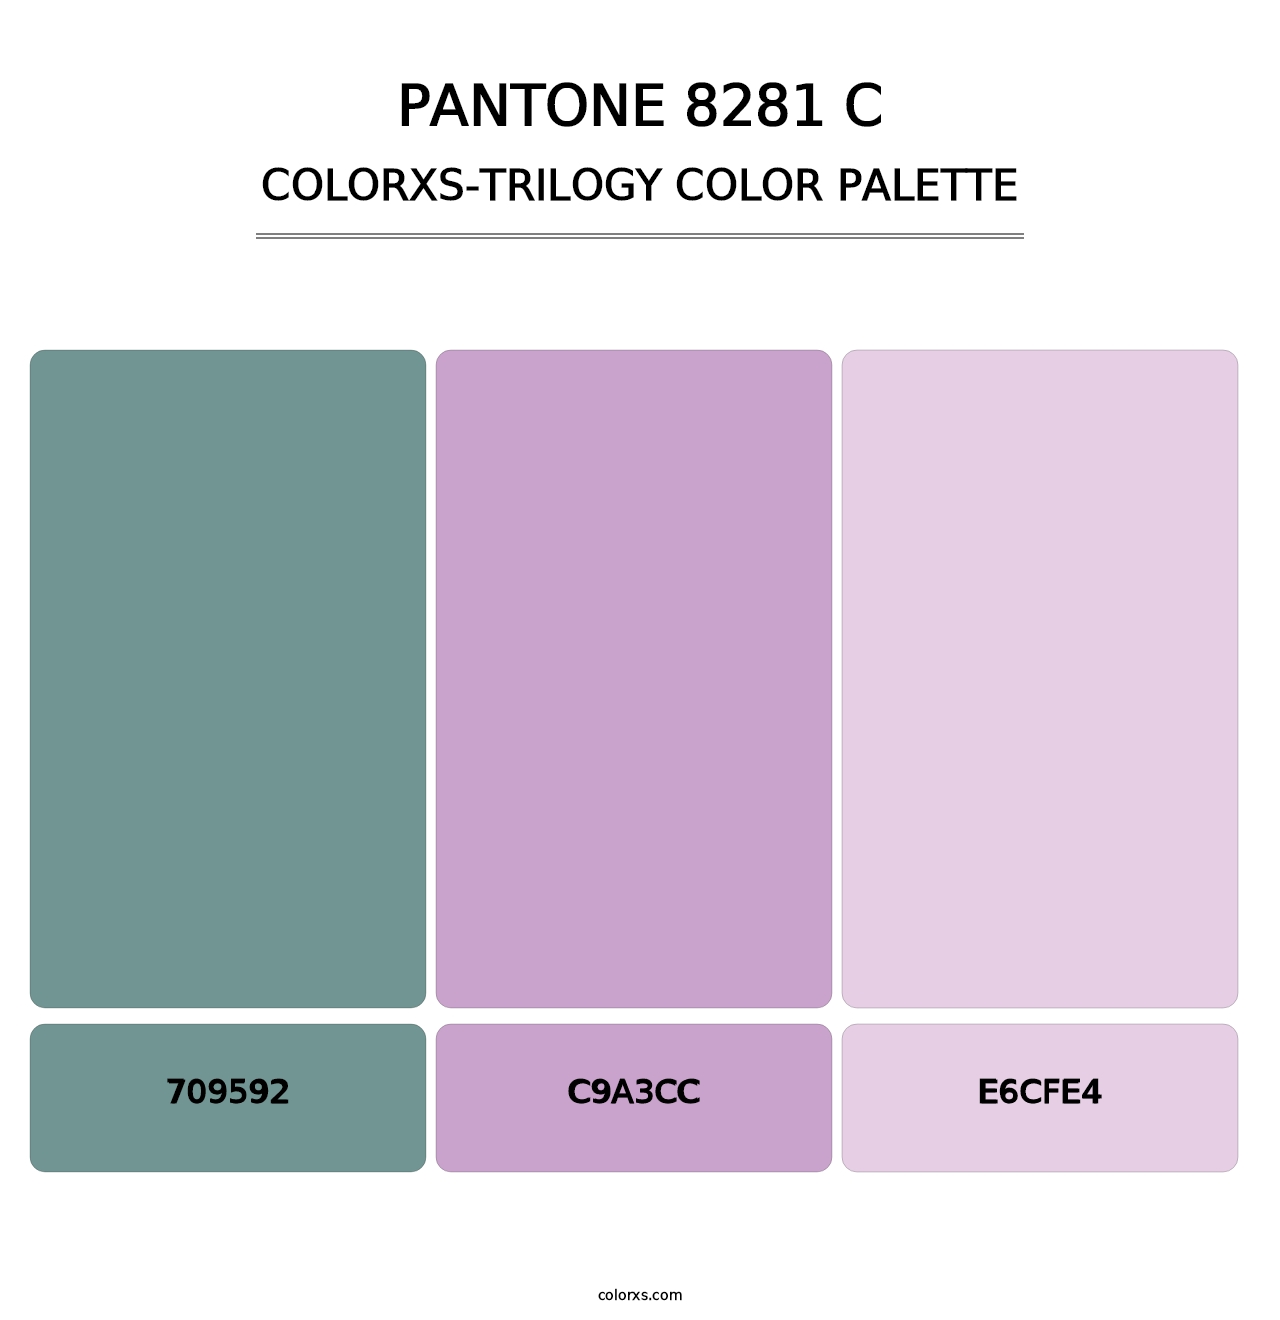 PANTONE 8281 C - Colorxs Trilogy Palette